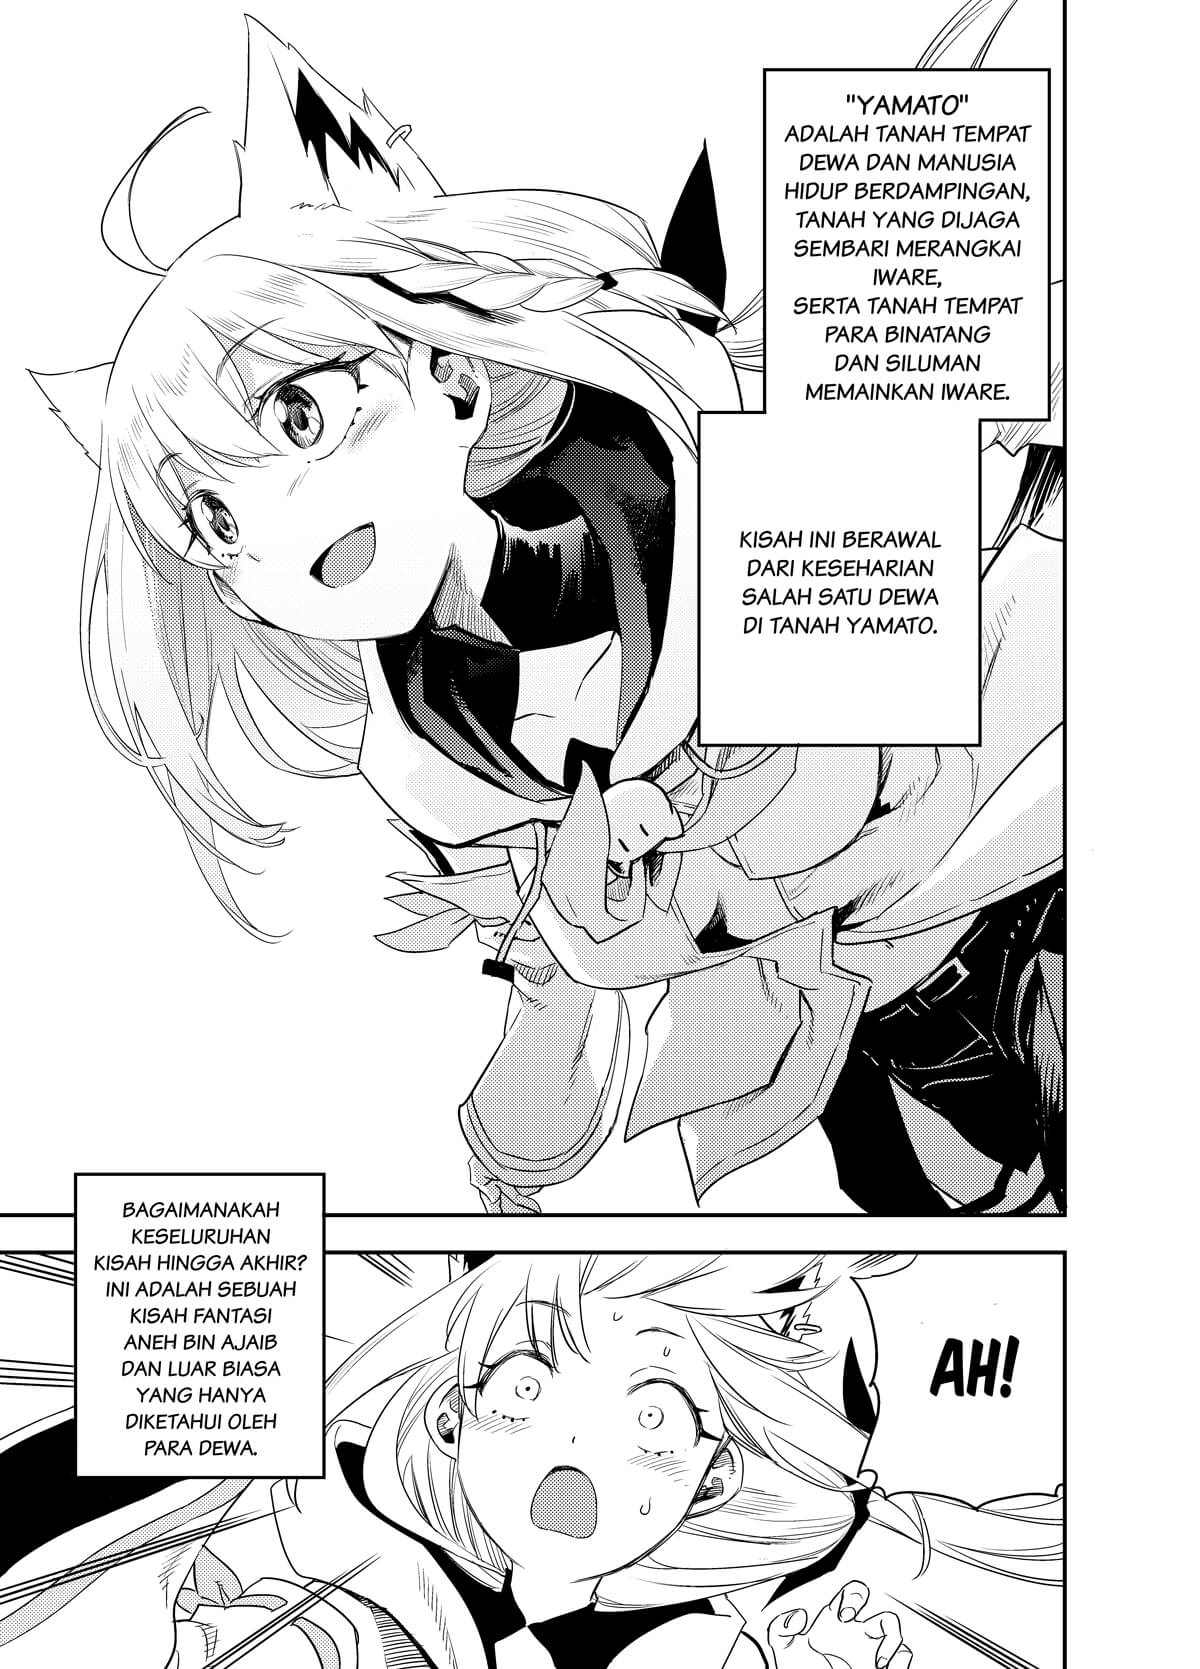 Holoearth Chronicles Side:E ~Yamato Phantasia~ Chapter 1.1